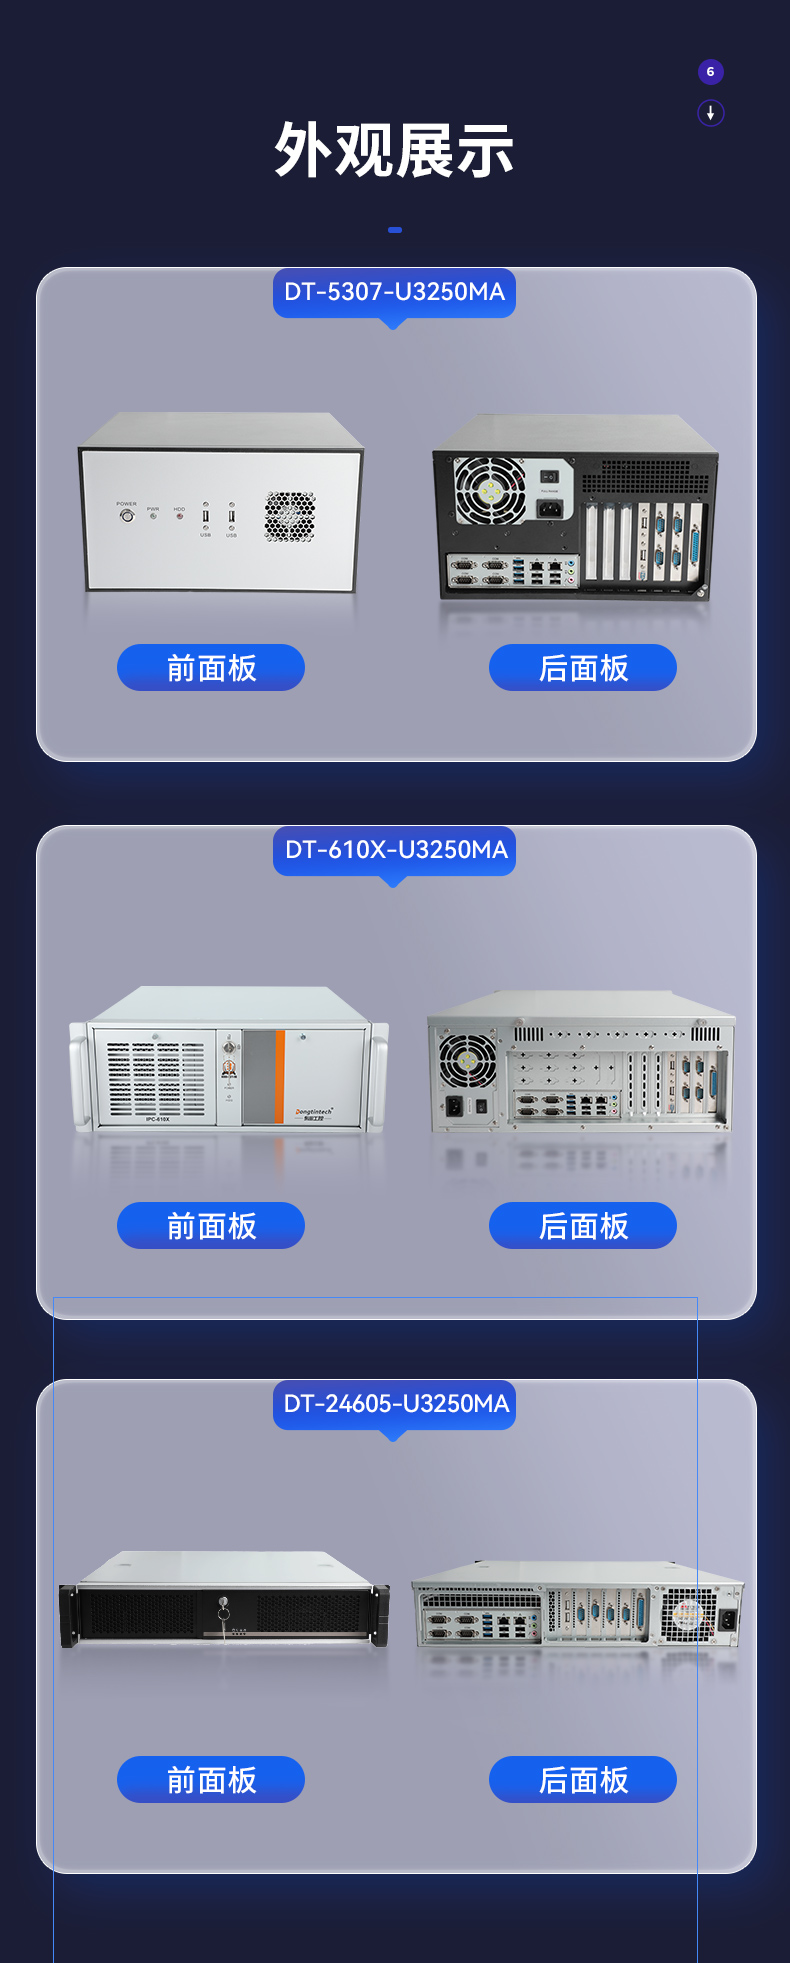 国内工控机厂商,海光CPU工控主机,DT-5307-U3250MA.jpg